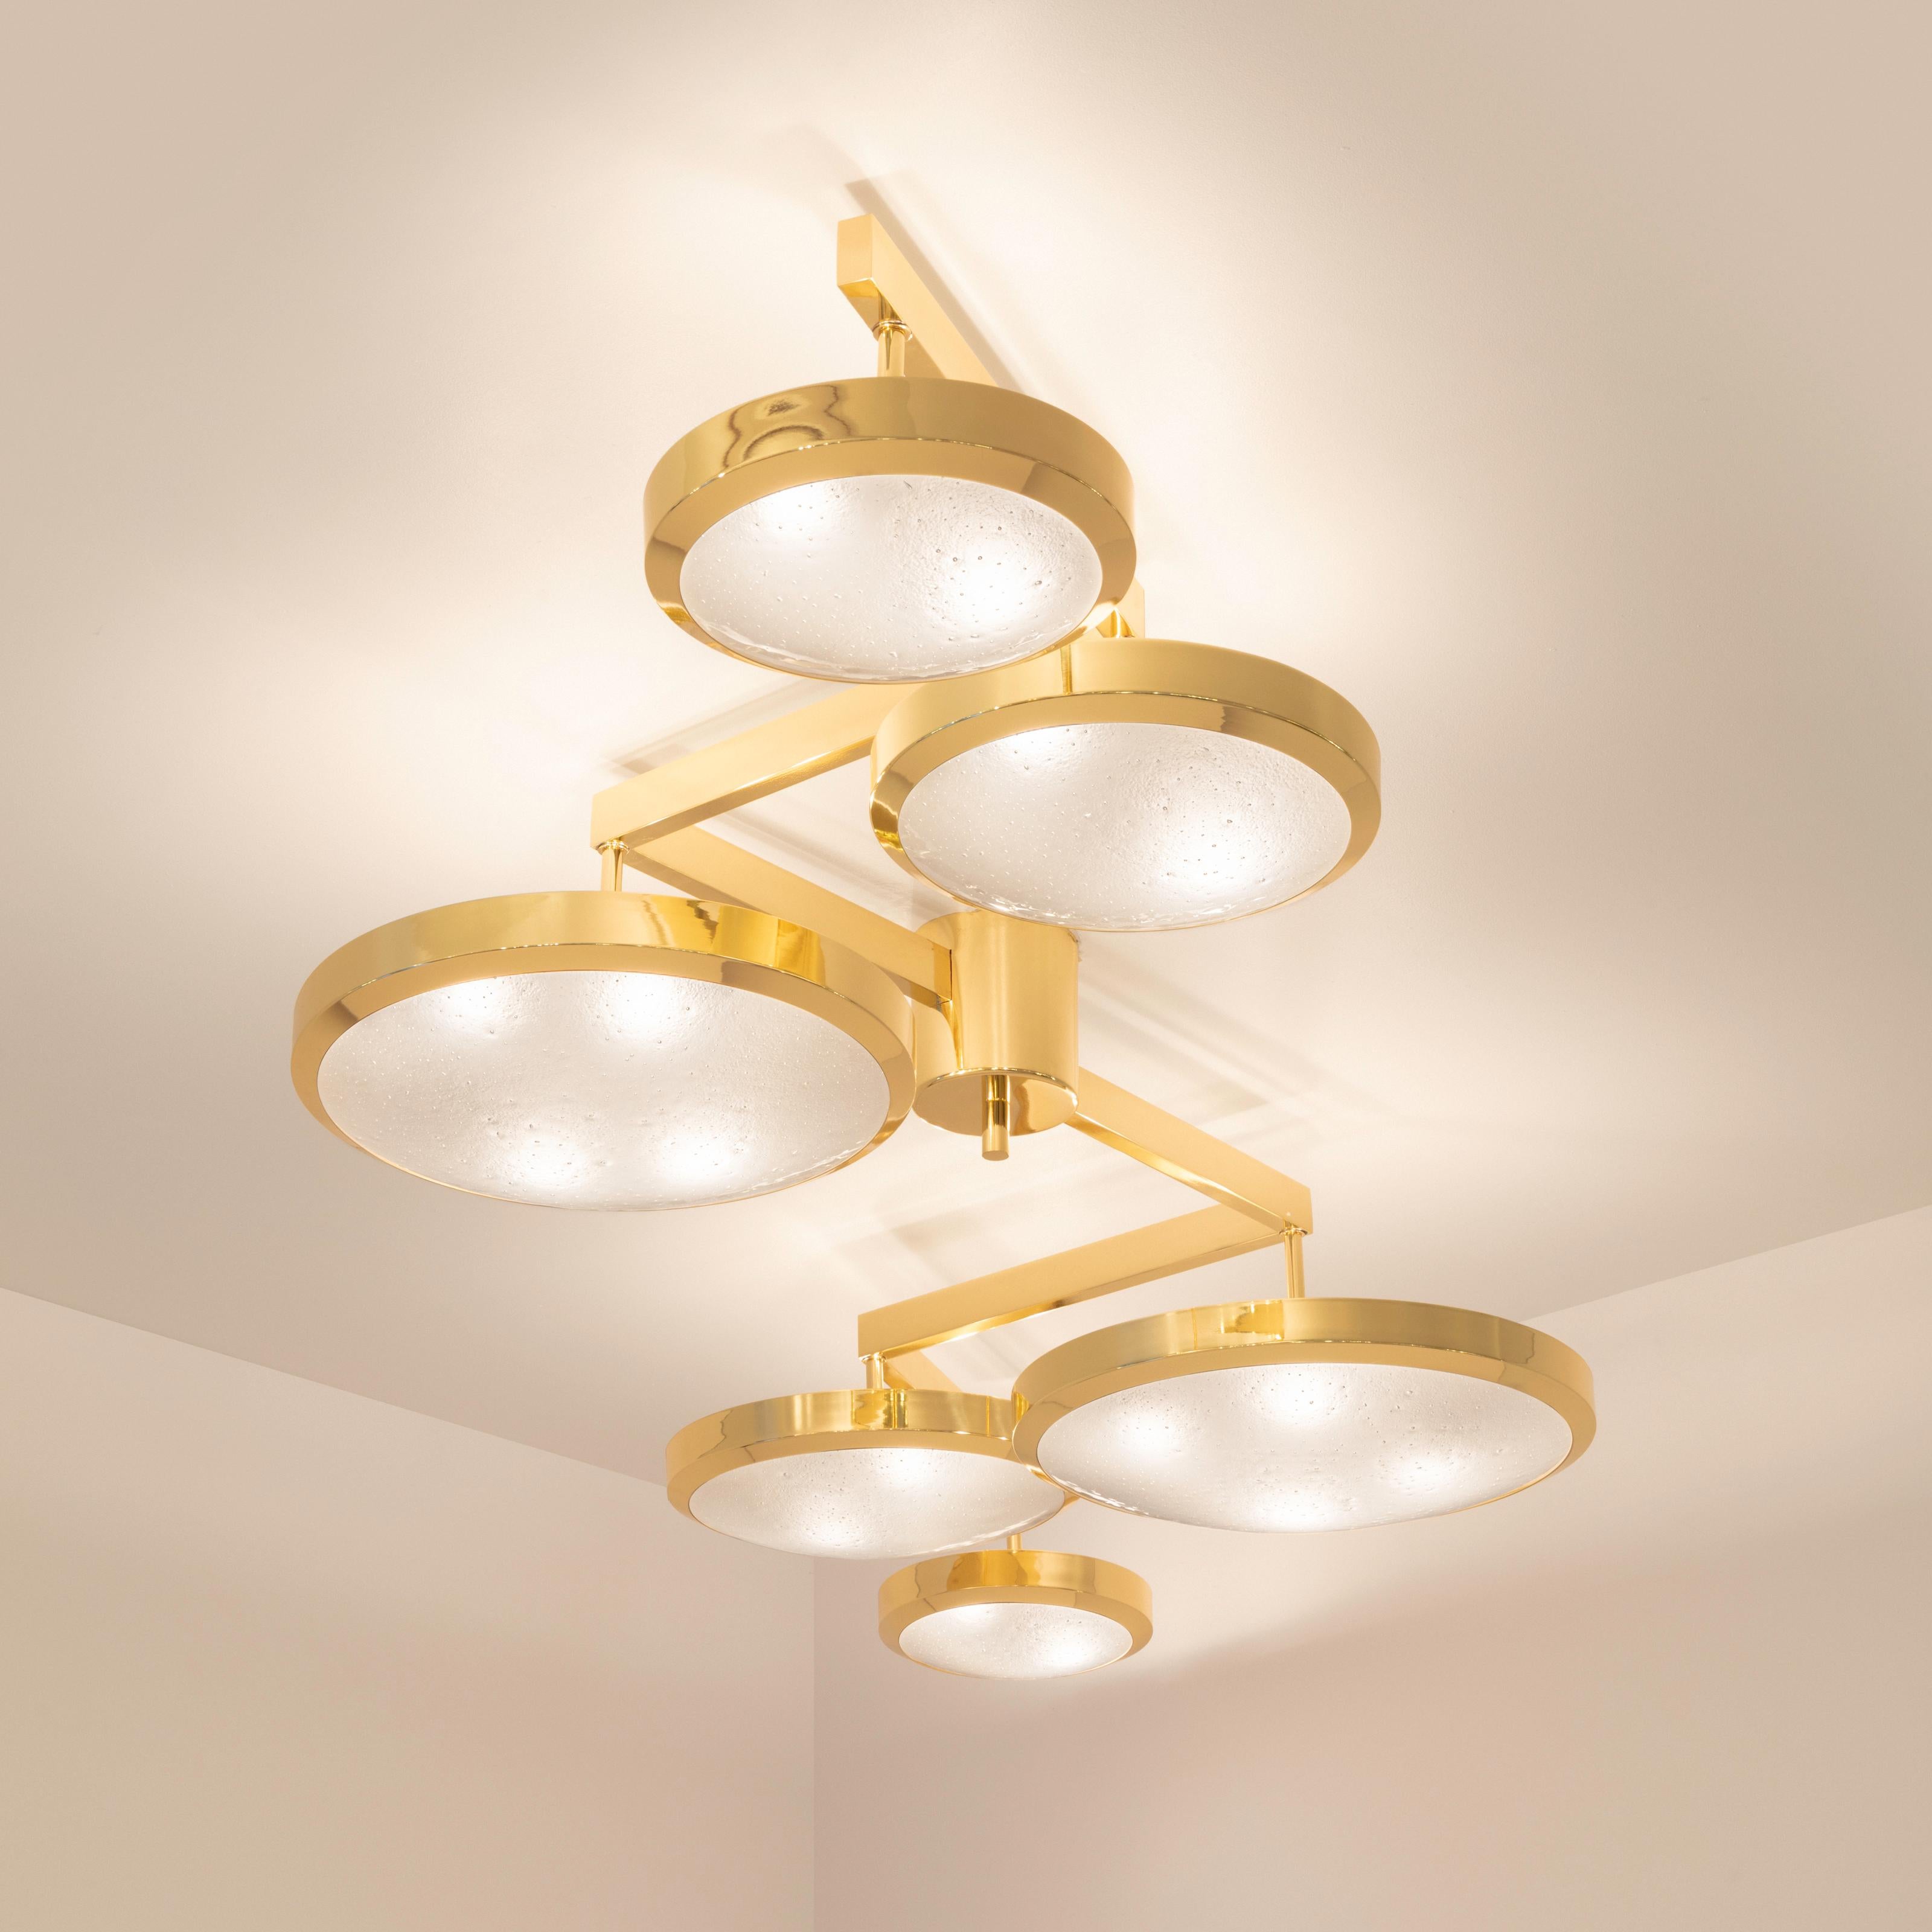 Italian Geometria Sospesa Ceiling Light by Gaspare Asaro-Brunito Nero Finish For Sale